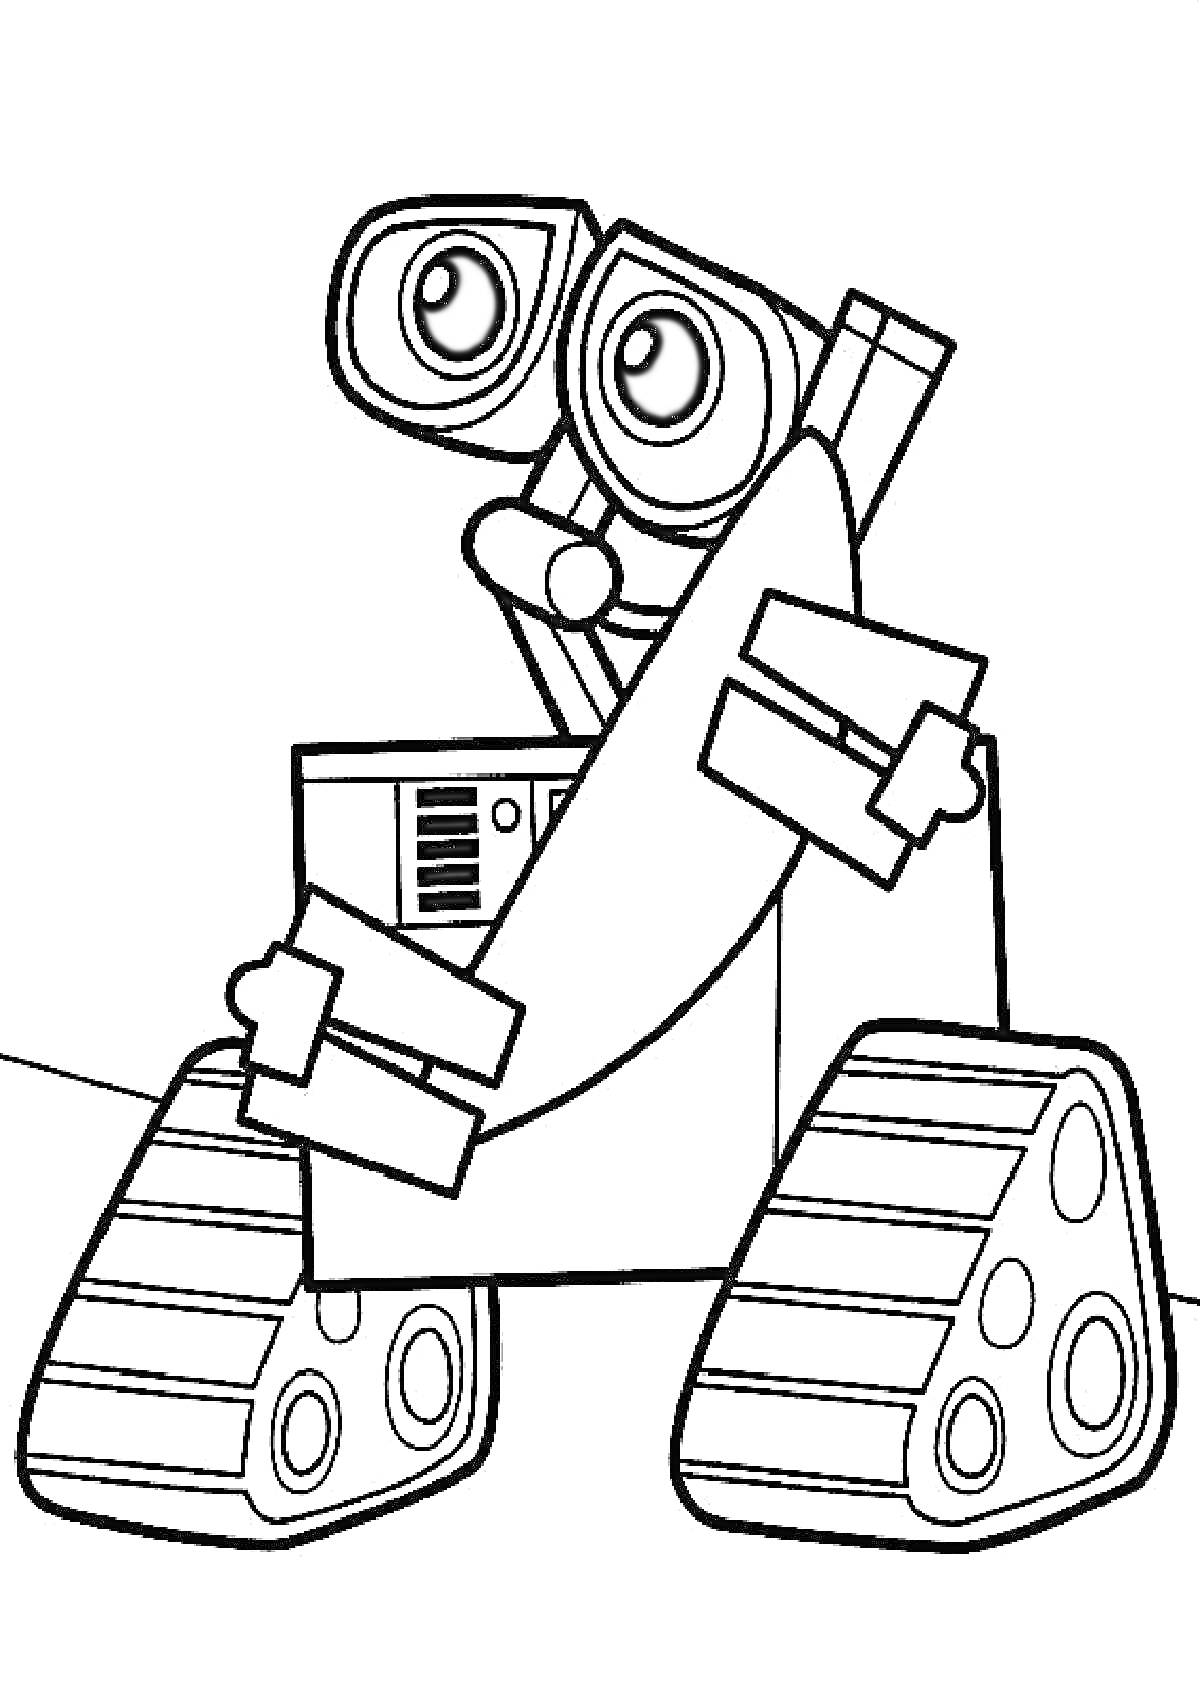 Раскраска Робот Валли с большими глазами и гусеницами